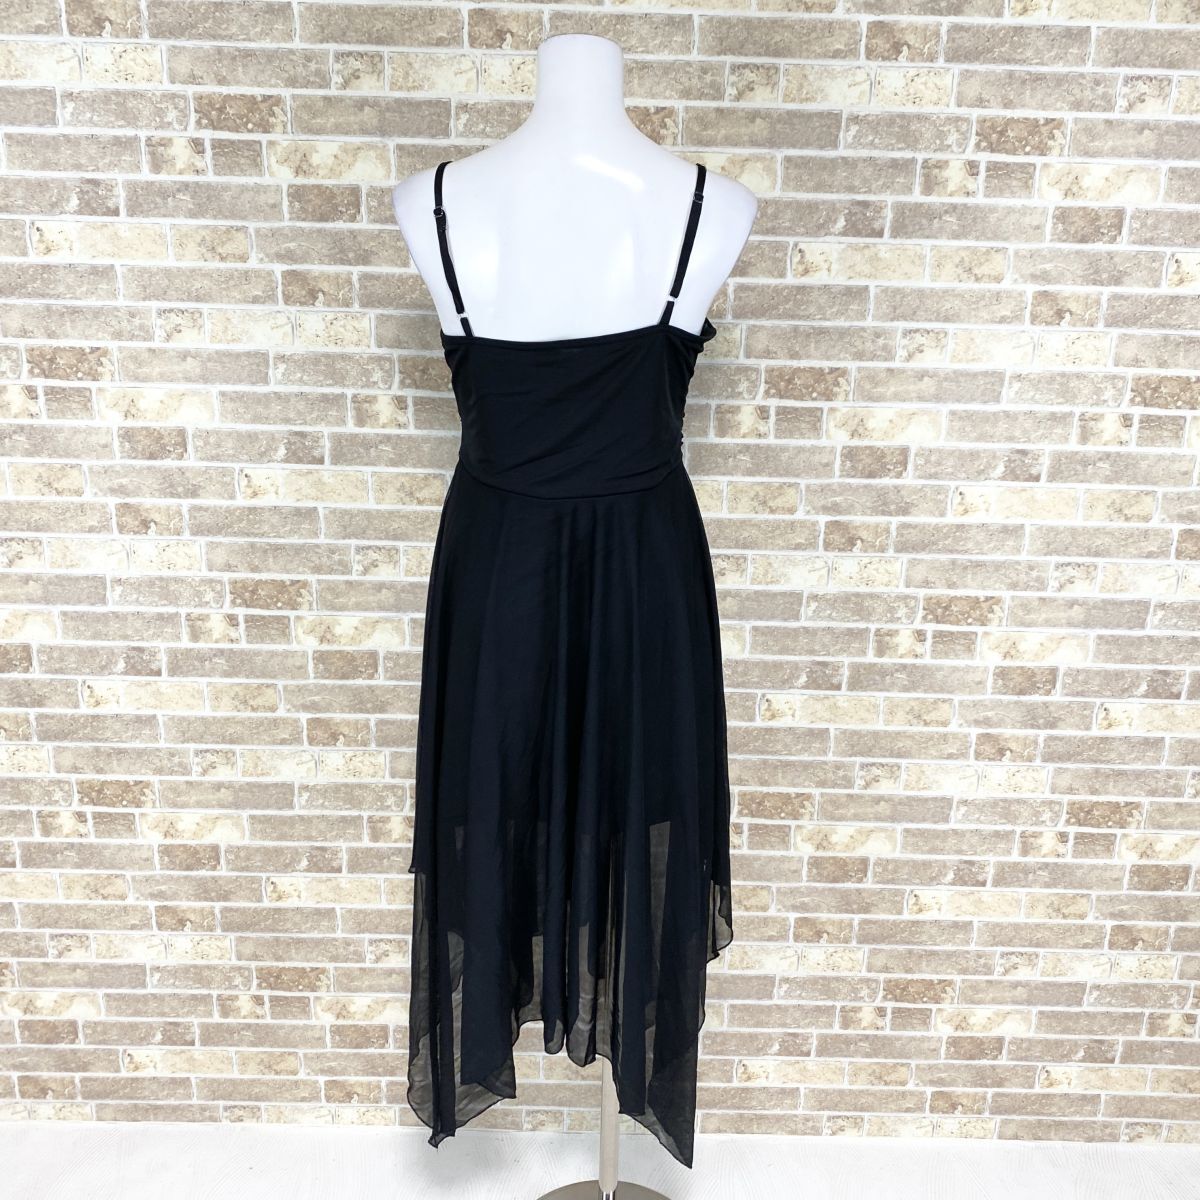 1 jpy dress ICHIOKU Cami One-piece black color dress kyabadore presentation Event used 4192